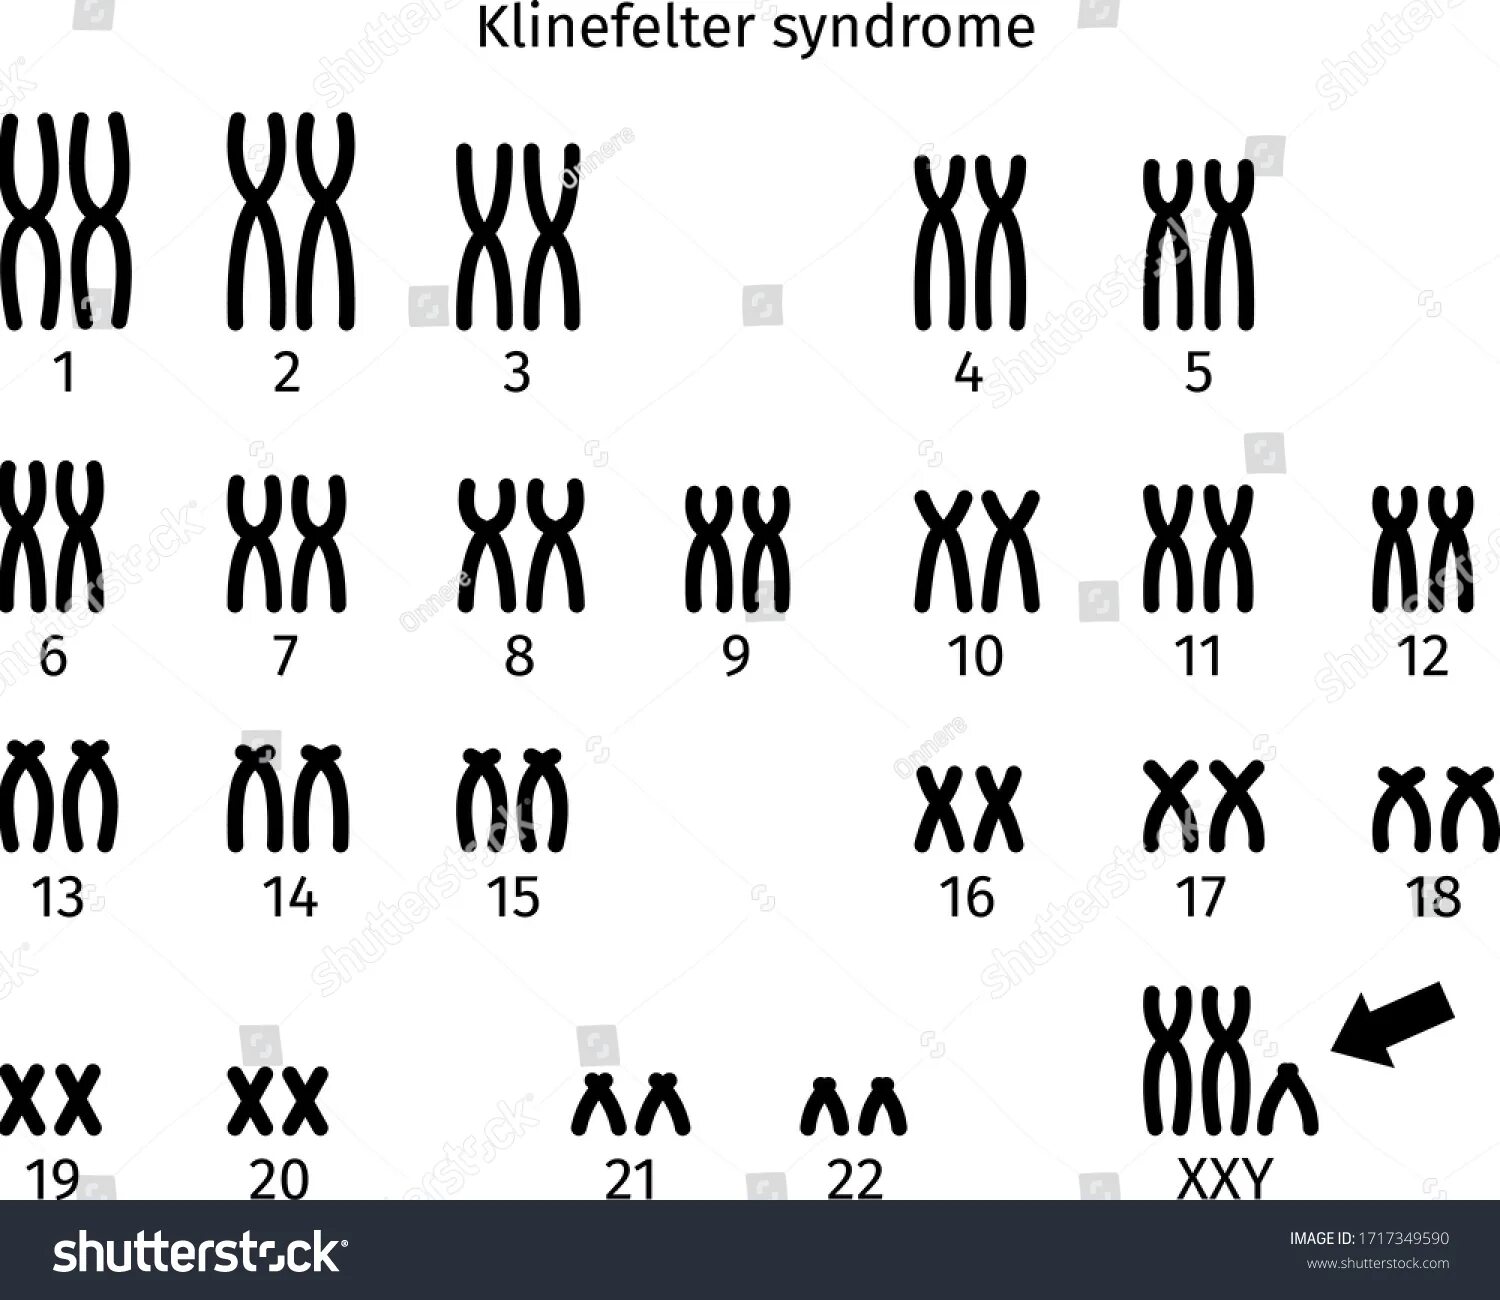 Klinefelter Syndrome karyotype. Клайнфелтер кариотип.